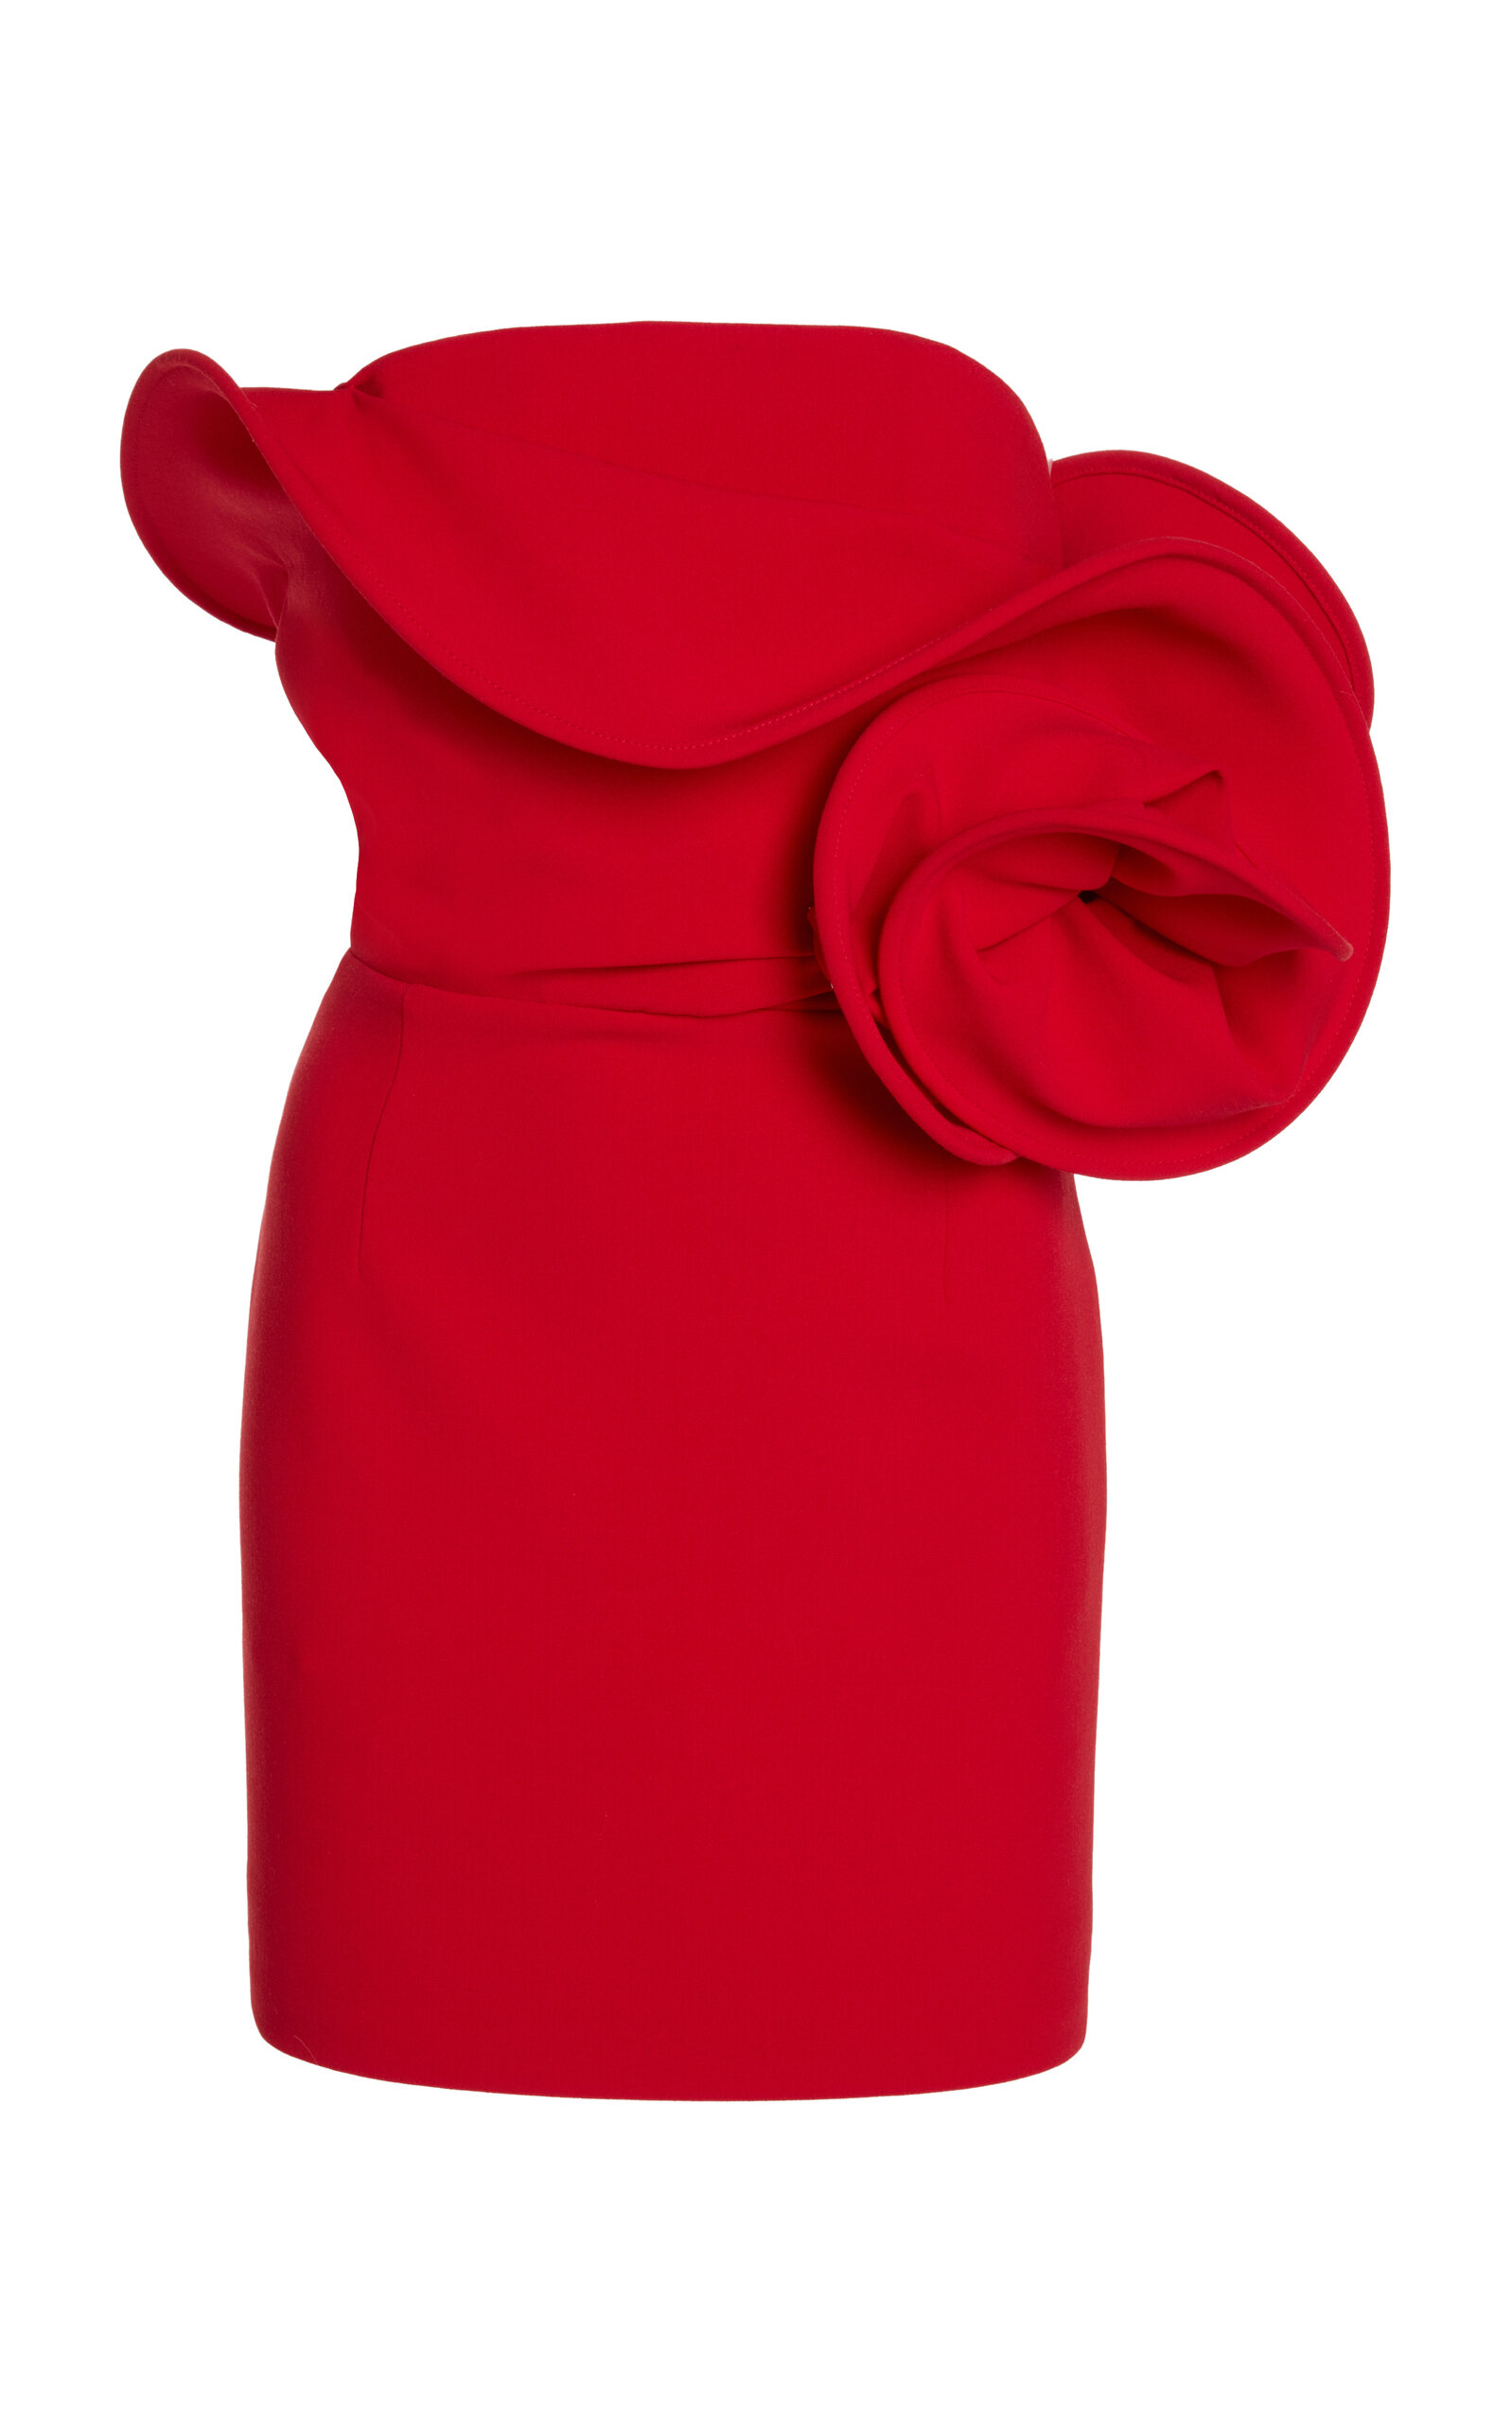 Magda Butrym Stretch-wool Dress In Red